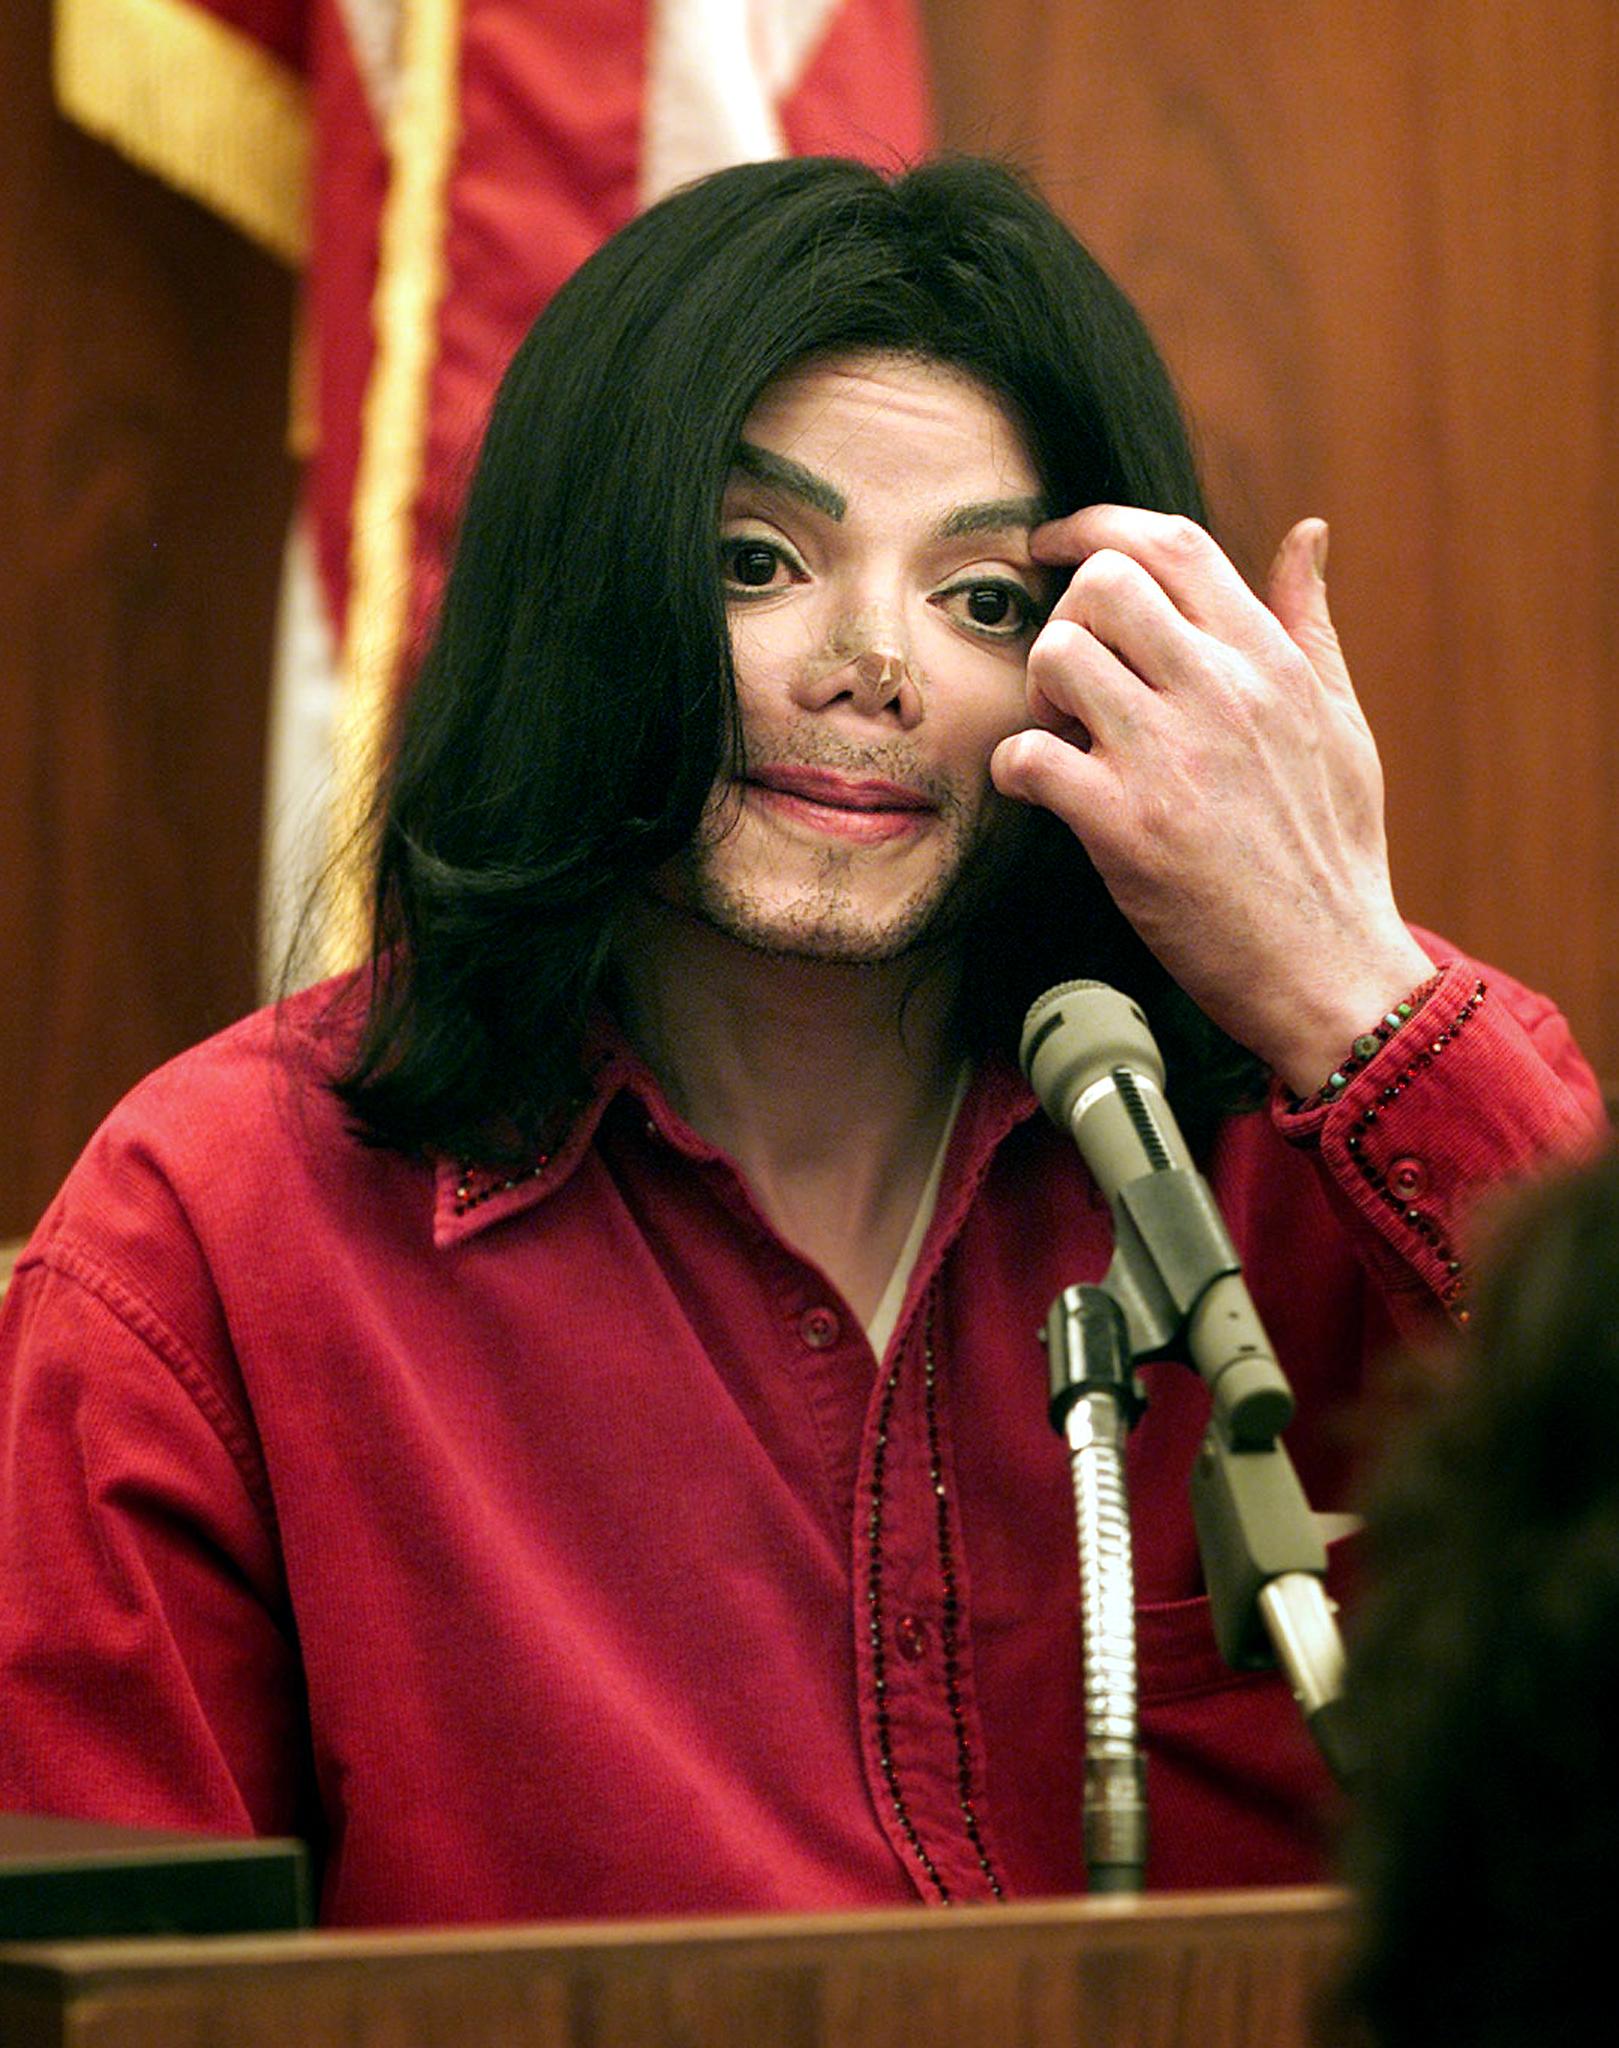 Michael Jackson au tribunal supérieur de Santa Maria en 2002 | Source : Getty Images